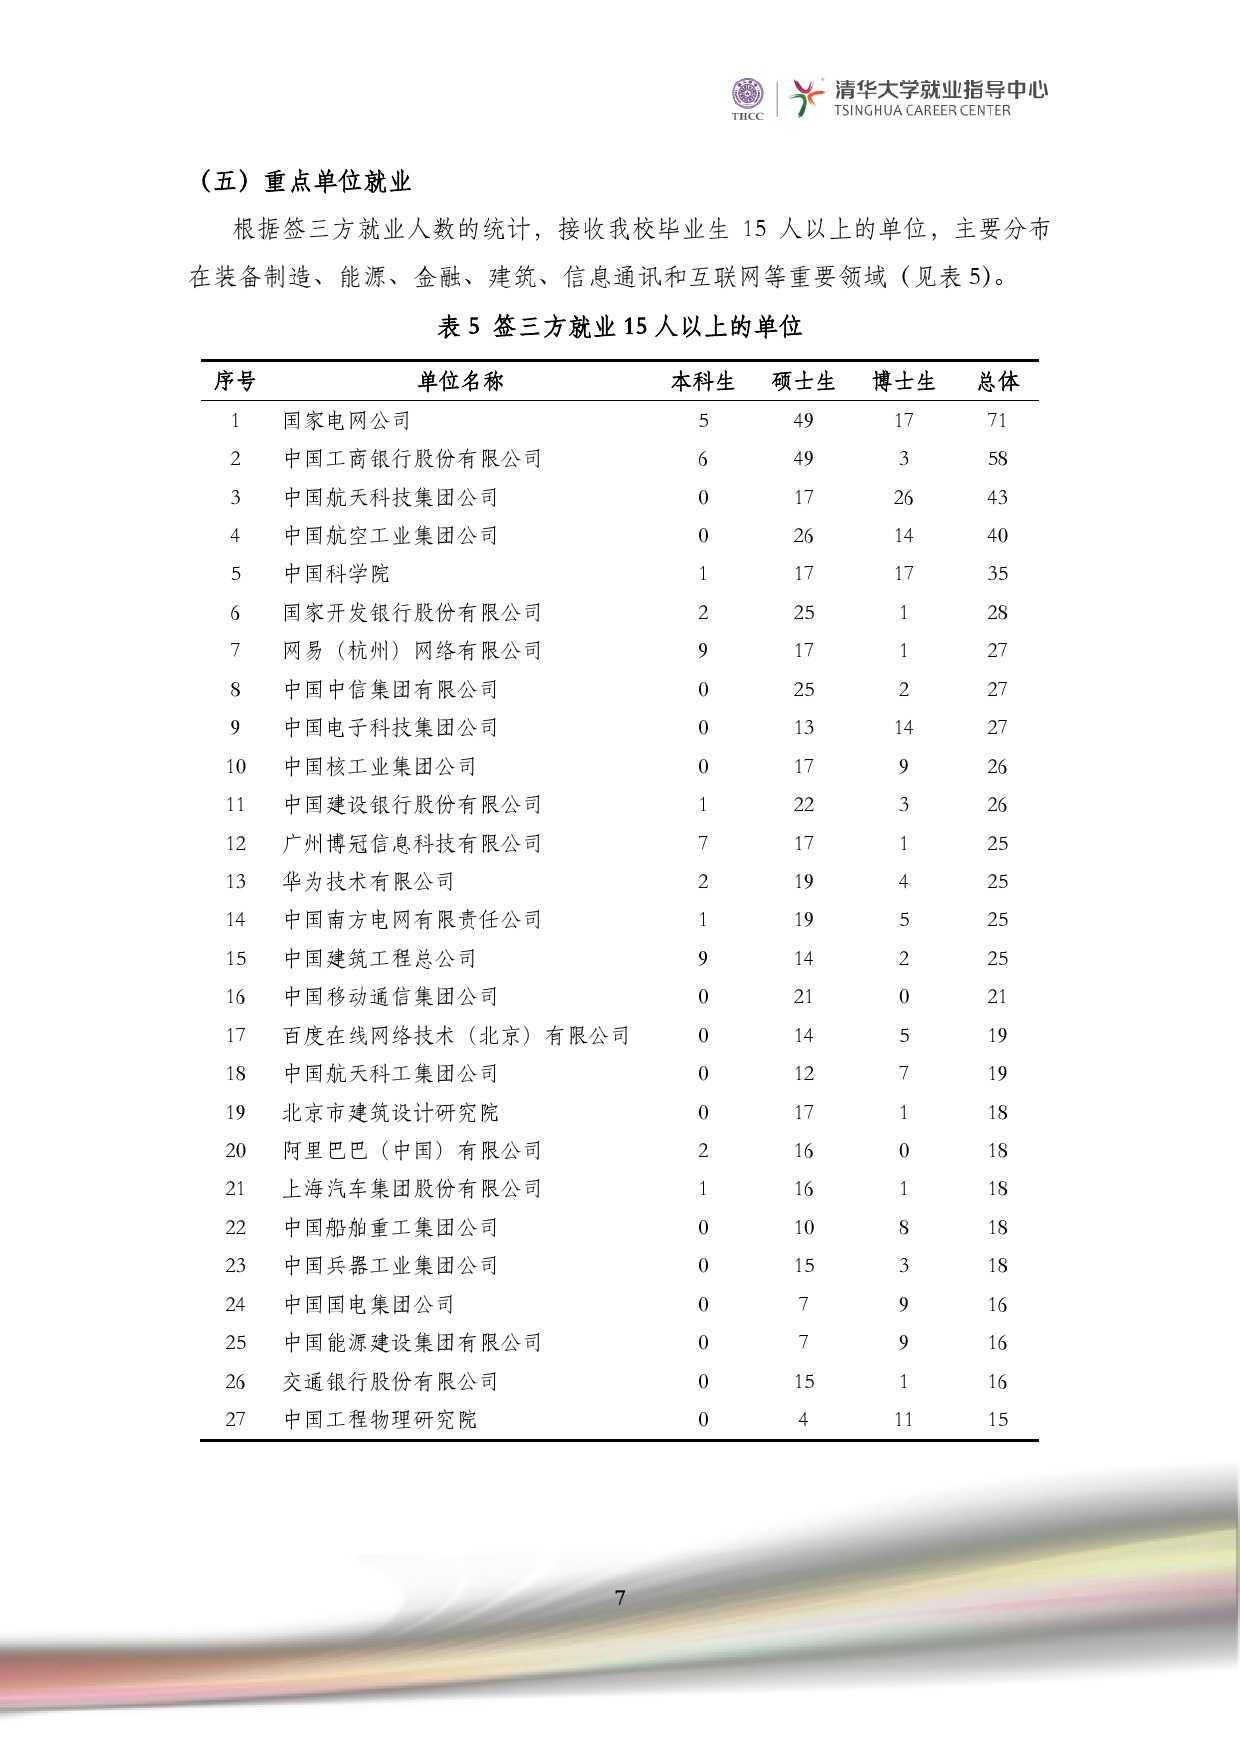 清華大學2014 年畢業生就業質量報告_000009